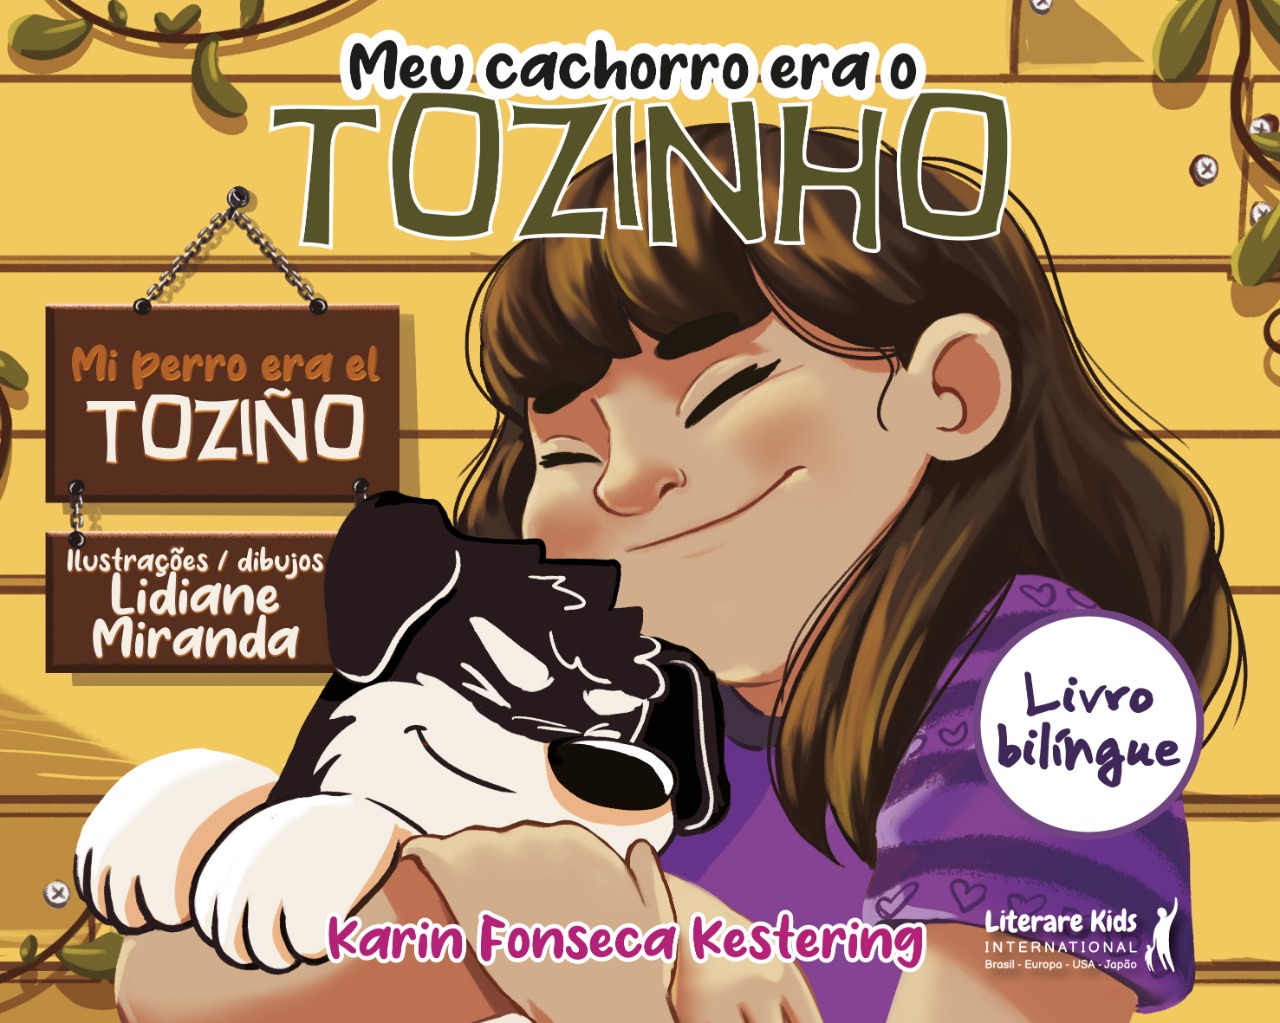 Meu cachorro era o Tozinho” é lançado na Feira do Livro de Porto Alegre ~ Revista Conexão Literatura foto